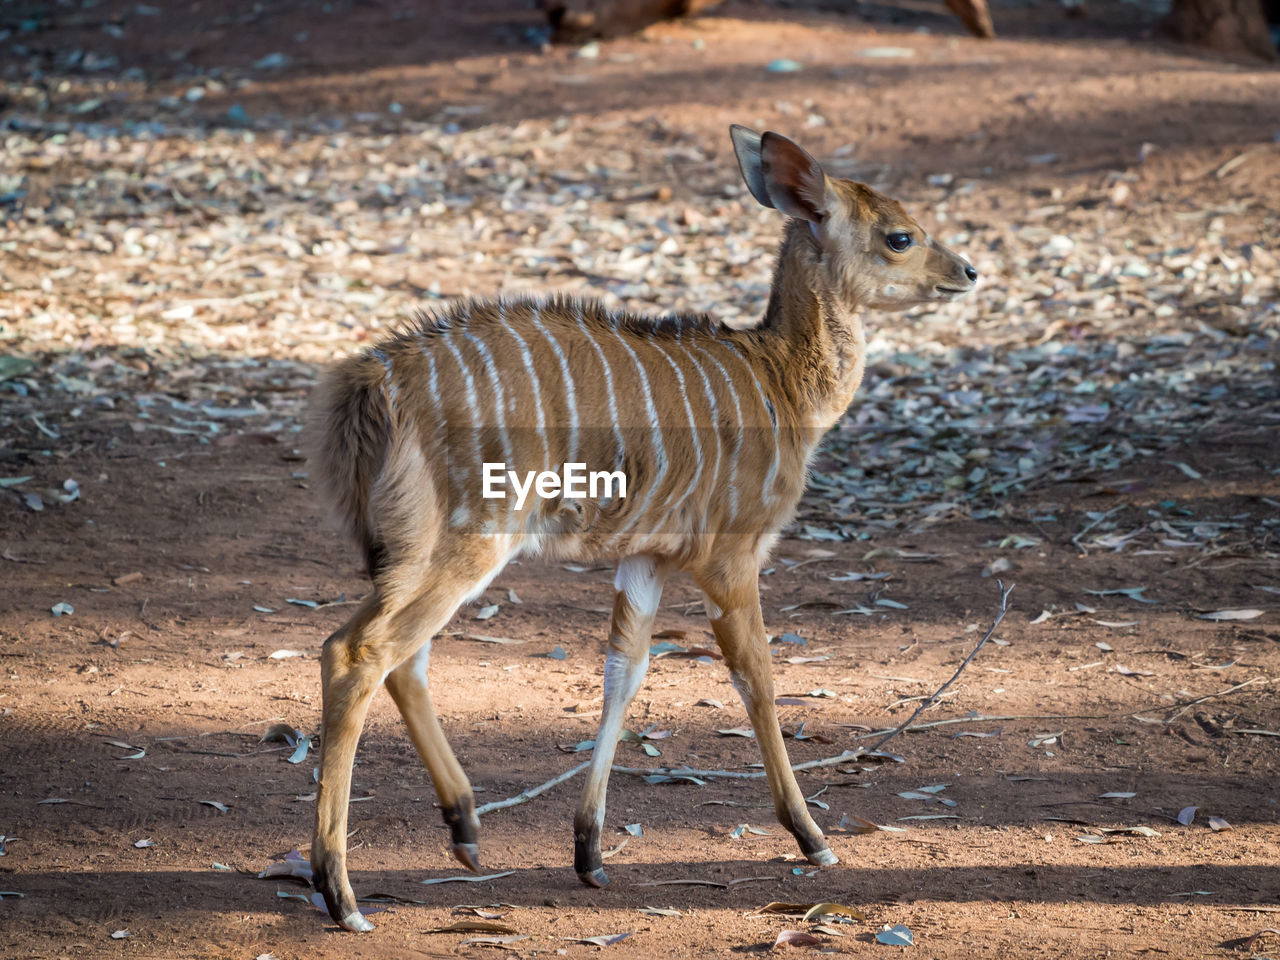 Young nyala antelope walking in 